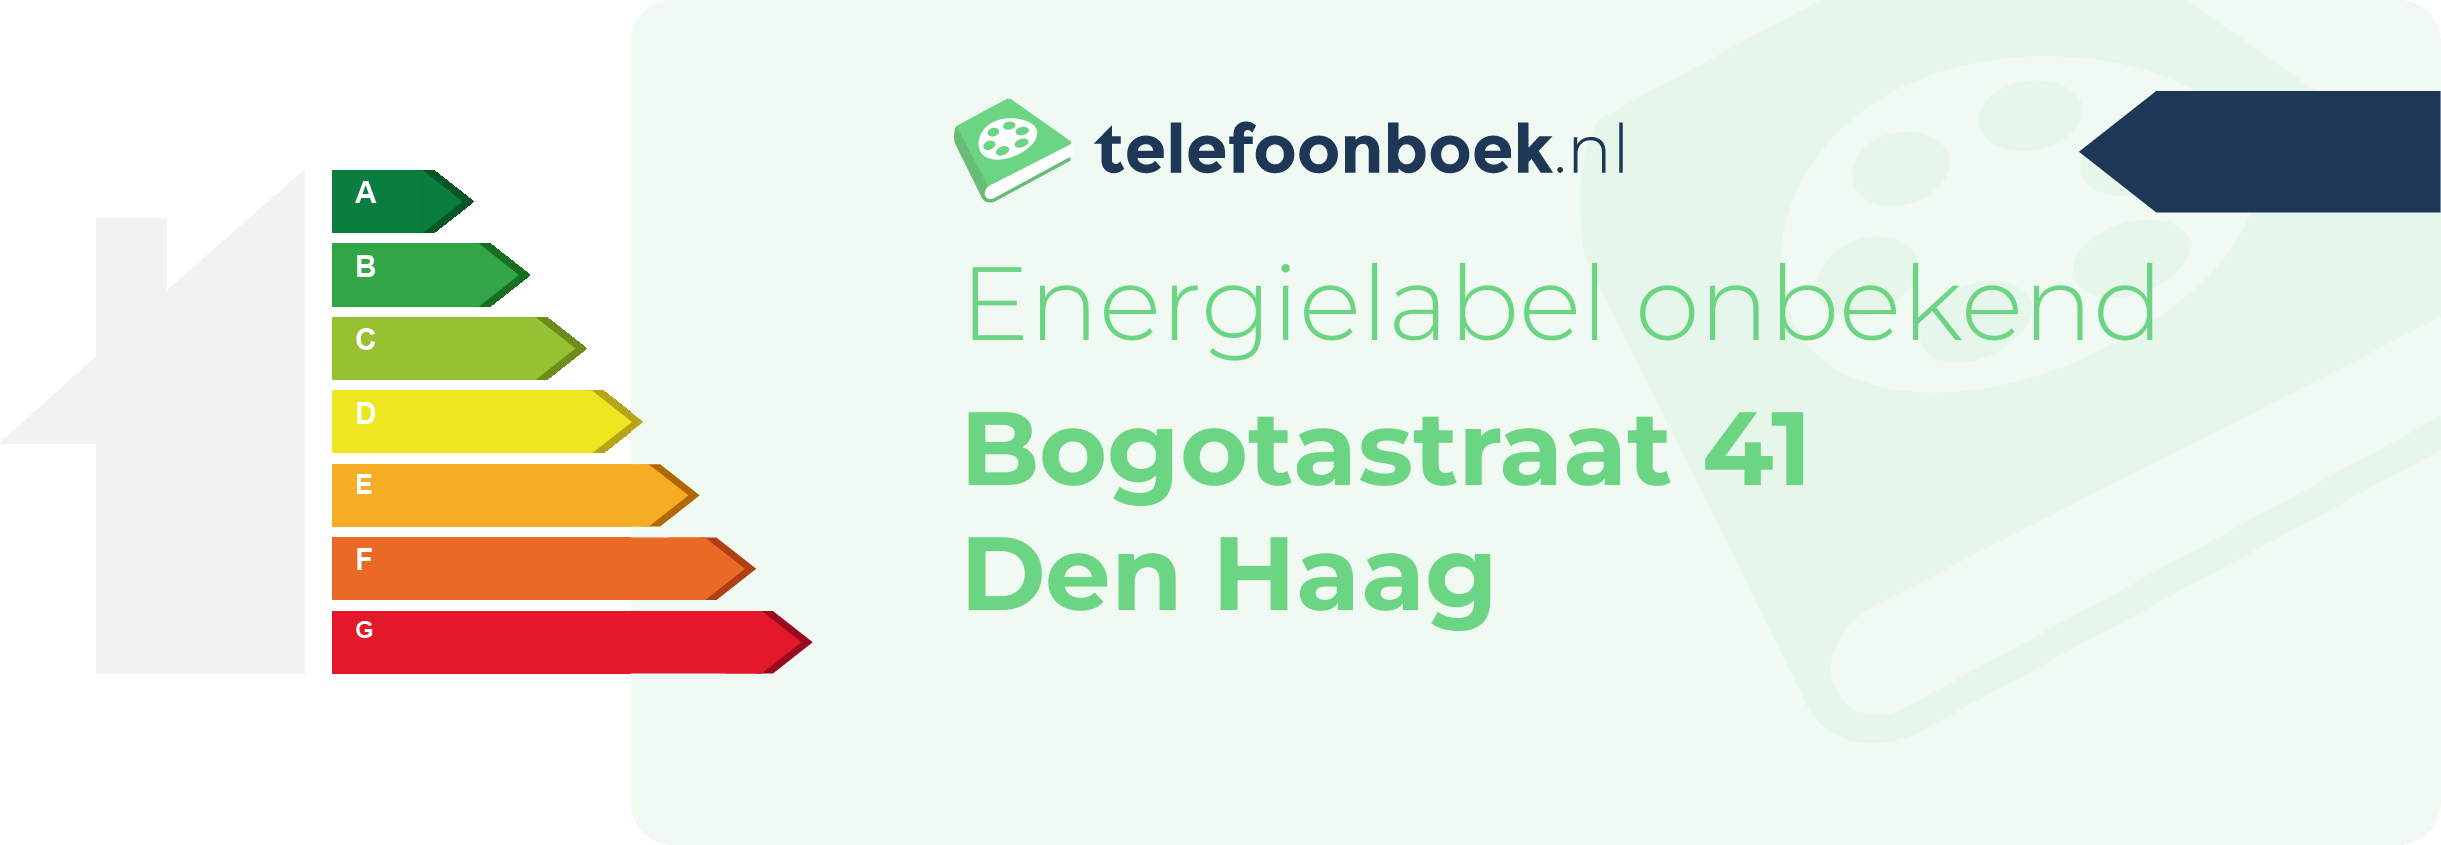 Energielabel Bogotastraat 41 Den Haag